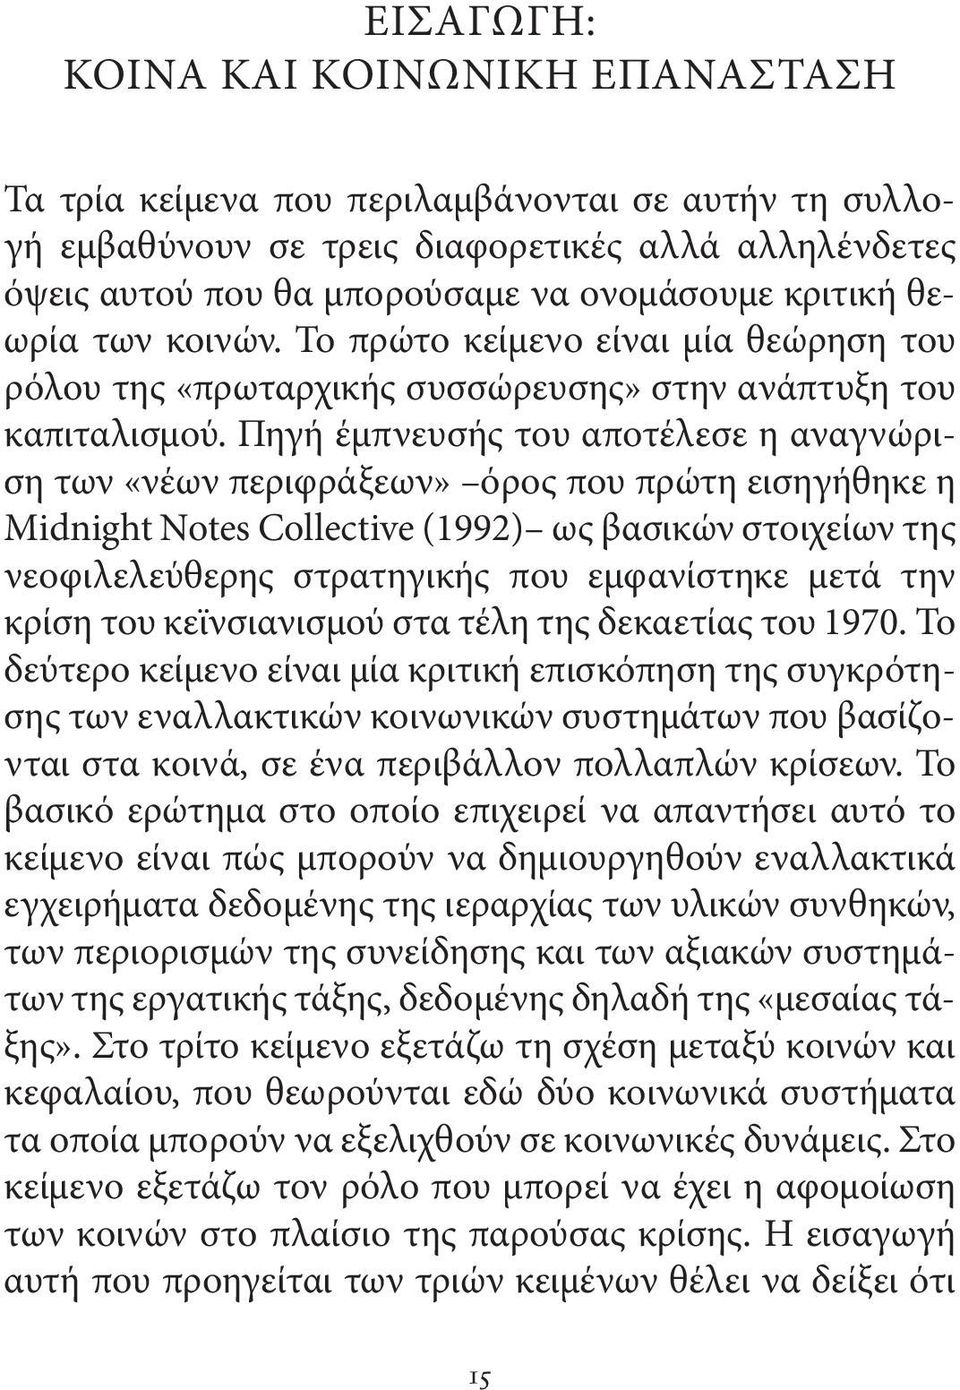 Πηγή έμπνευσής του αποτέλεσε η αναγνώριση των «νέων περιφράξεων» όρος που πρώτη εισηγήθηκε η Midnight Notes Collective (1992) ως βασικών στοιχείων της νεοφιλελεύθερης στρατηγικής που εμφανίστηκε μετά